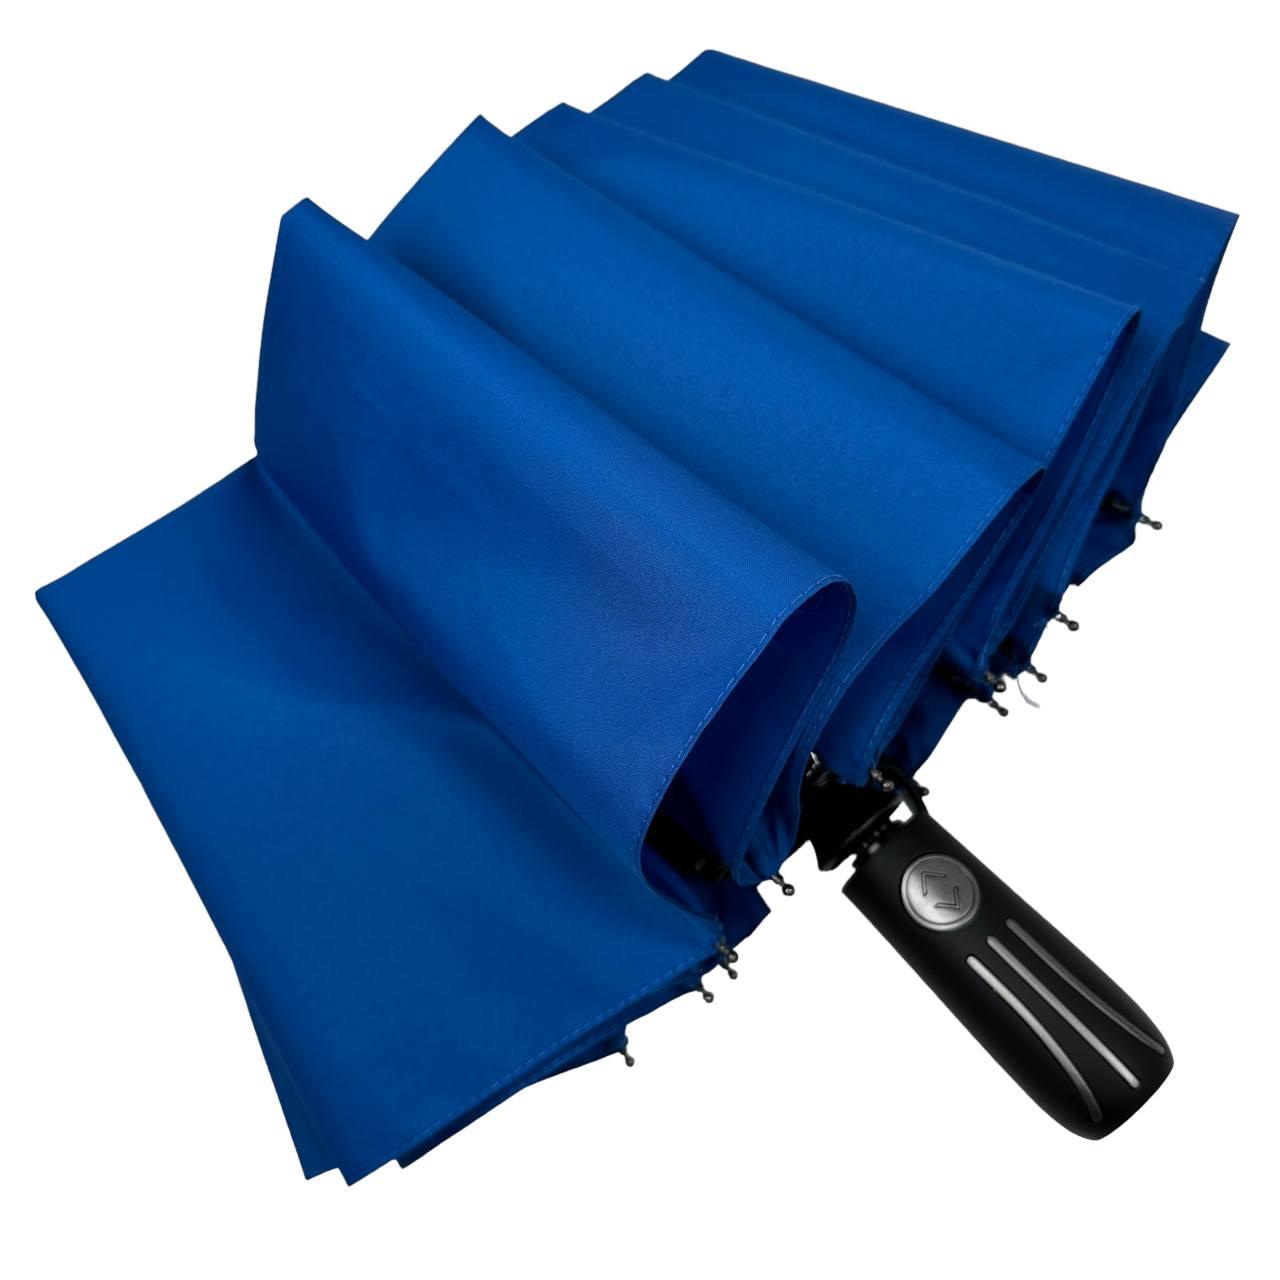 Складана парасолька повний автомат Toprain 105 см синя - фото 4